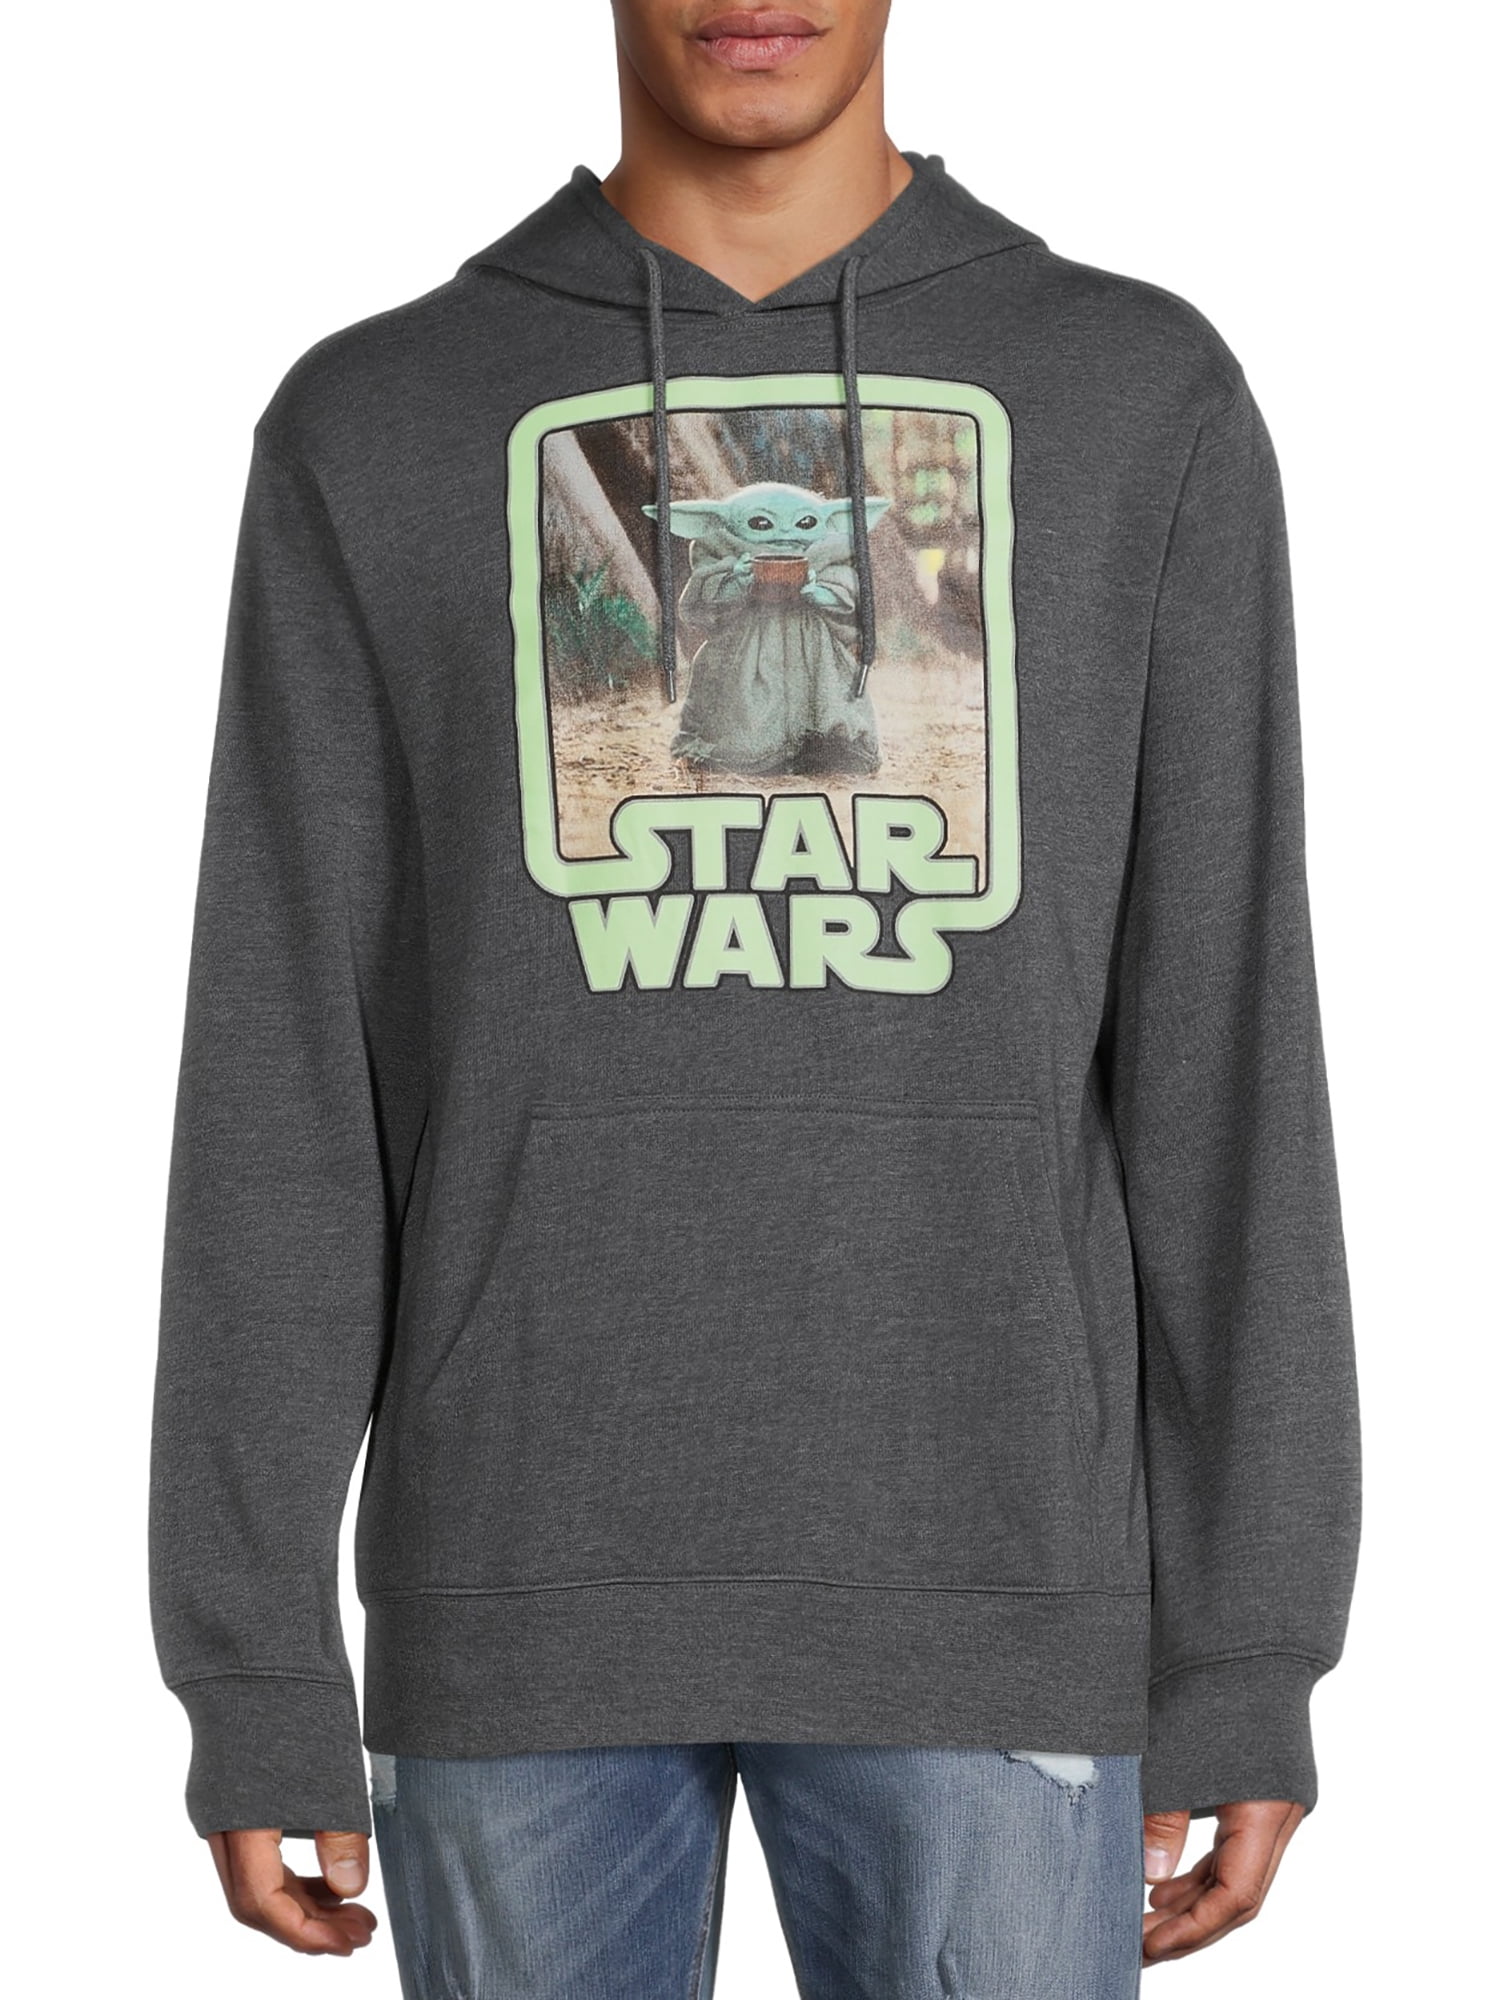 New Fans Star Wars Man Hoodie Full Print Custom Size S-3XL